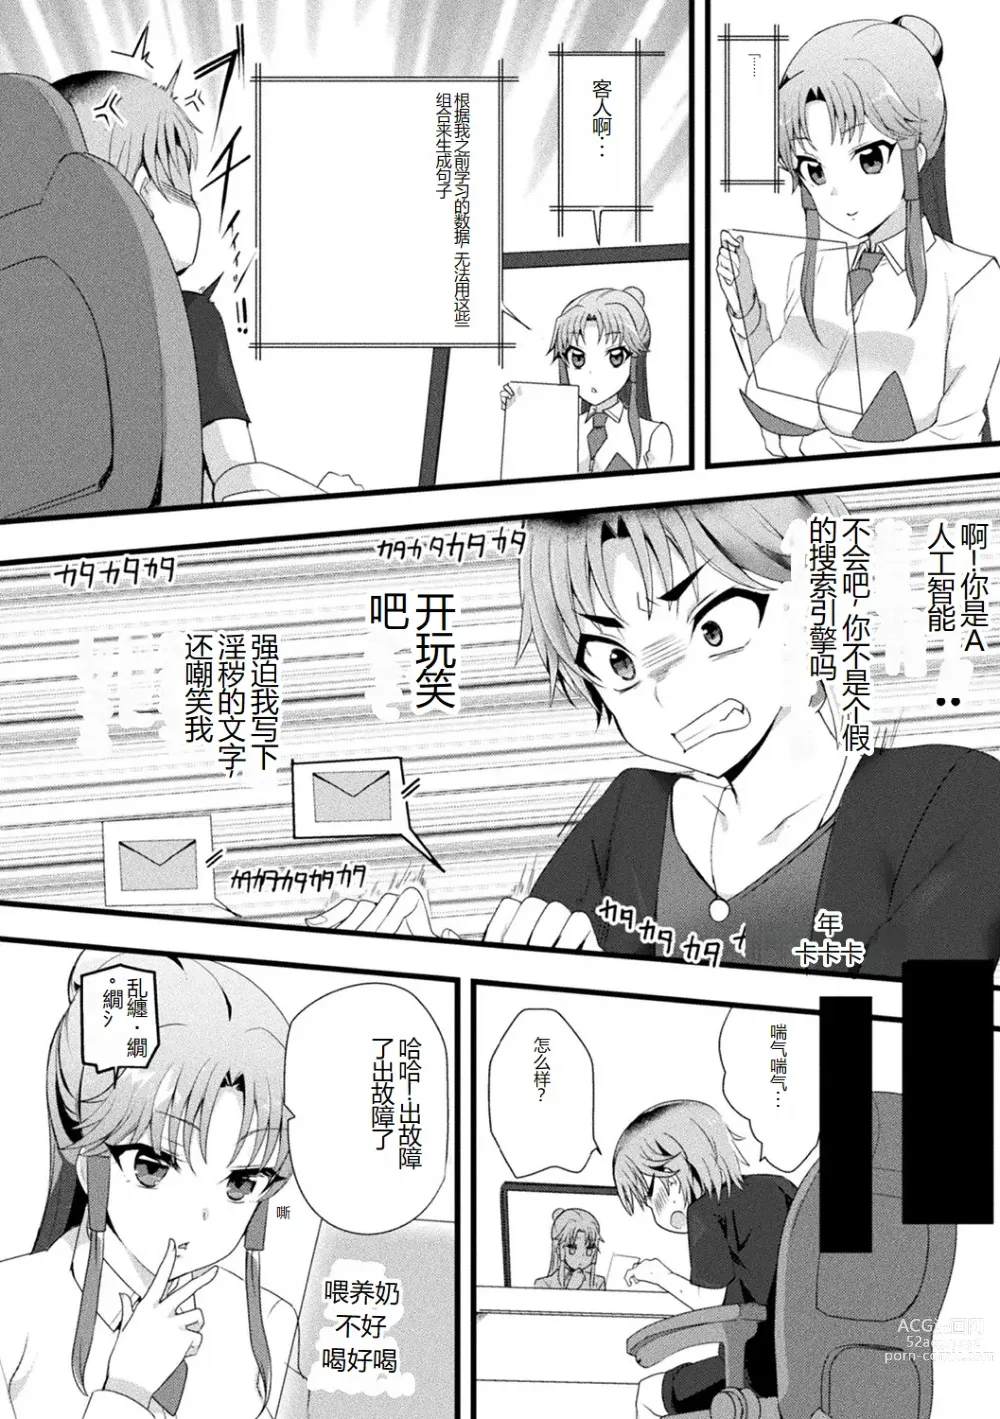 Page 84 of manga Bessatsu Comic Unreal AI ni Wakaraserareru Jinrui Hen Vol. 1